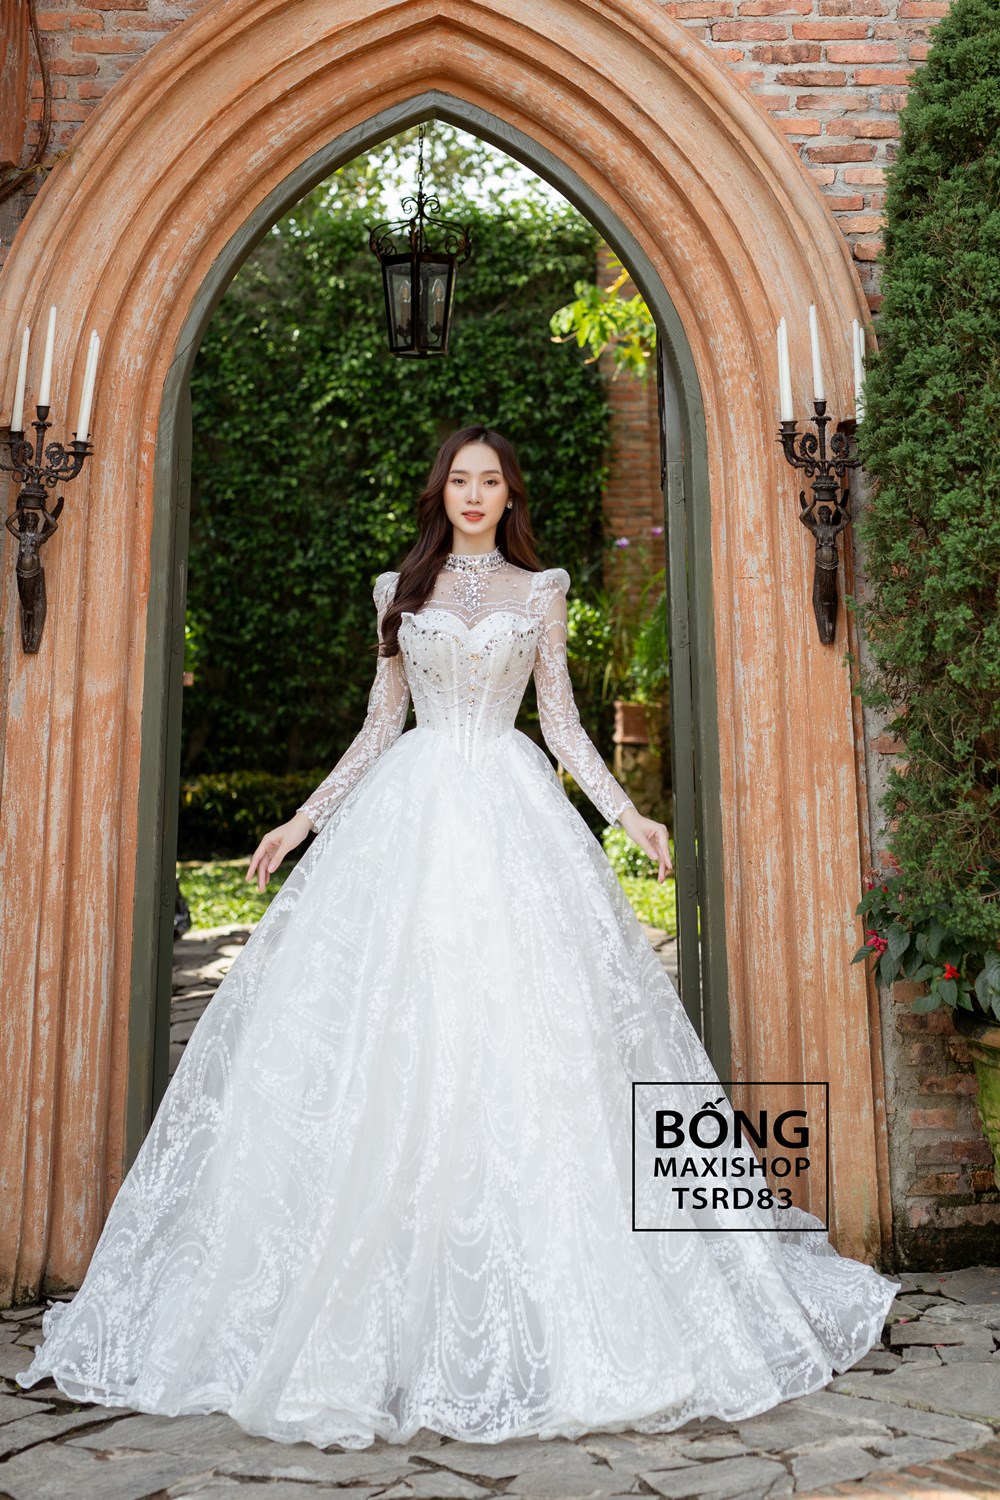 15 mẫu váy cưới xòe đẹp nhất cho cô dâu muôn phần lộng lẫy